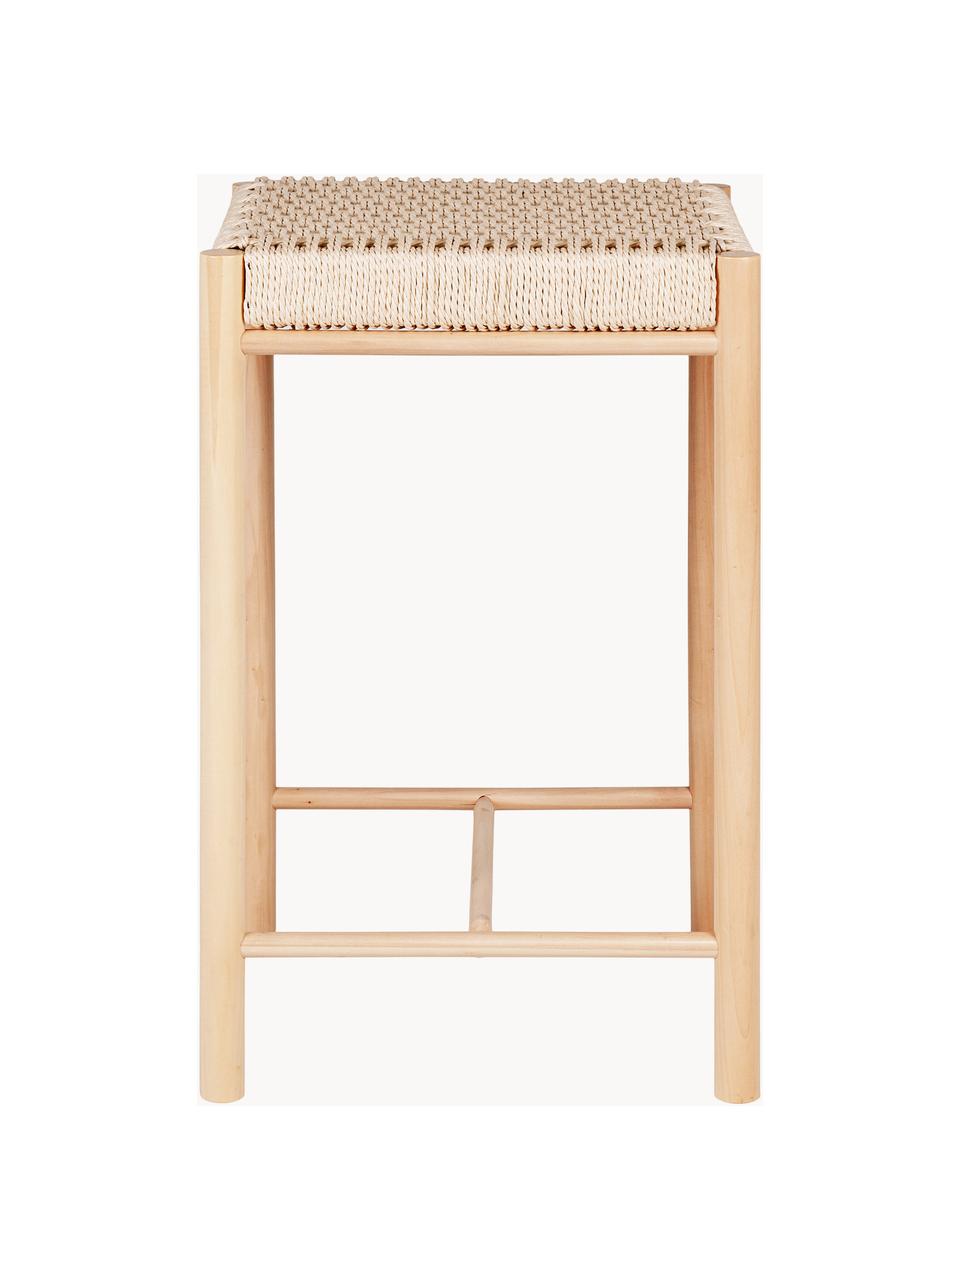 Barová stolička z topoľového dreva Abano, Topoľové drevo, papierové pletivo, Topoľové drevo, Š 42 x V 67 cm